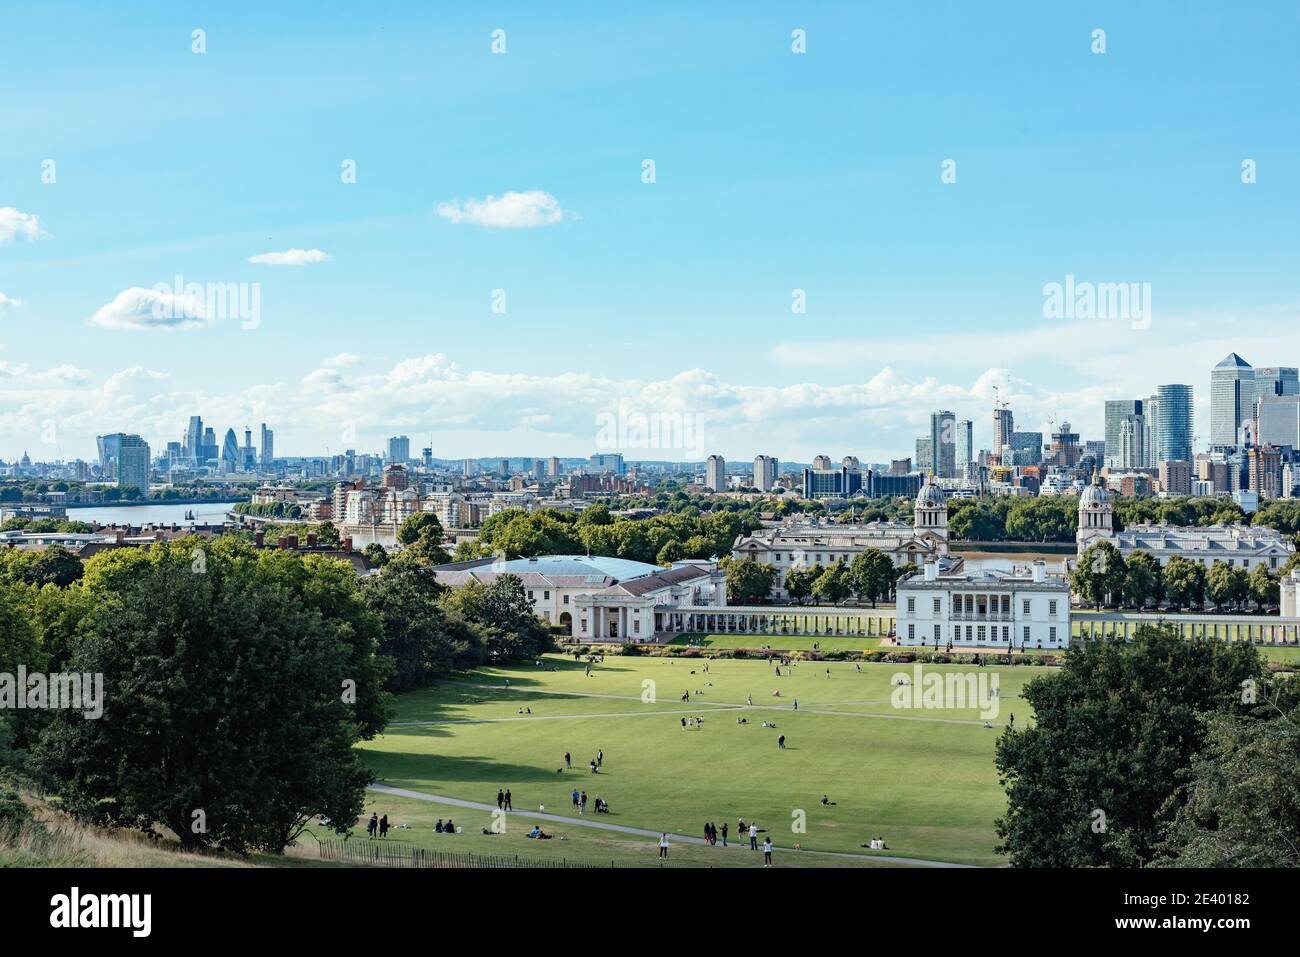 Le point de vue adjacent au Royal Observatory Greenwich à Greenwich Park, Greenwich, en regardant nos acrossLondon à Canary Wharf, The City et au-delà Banque D'Images